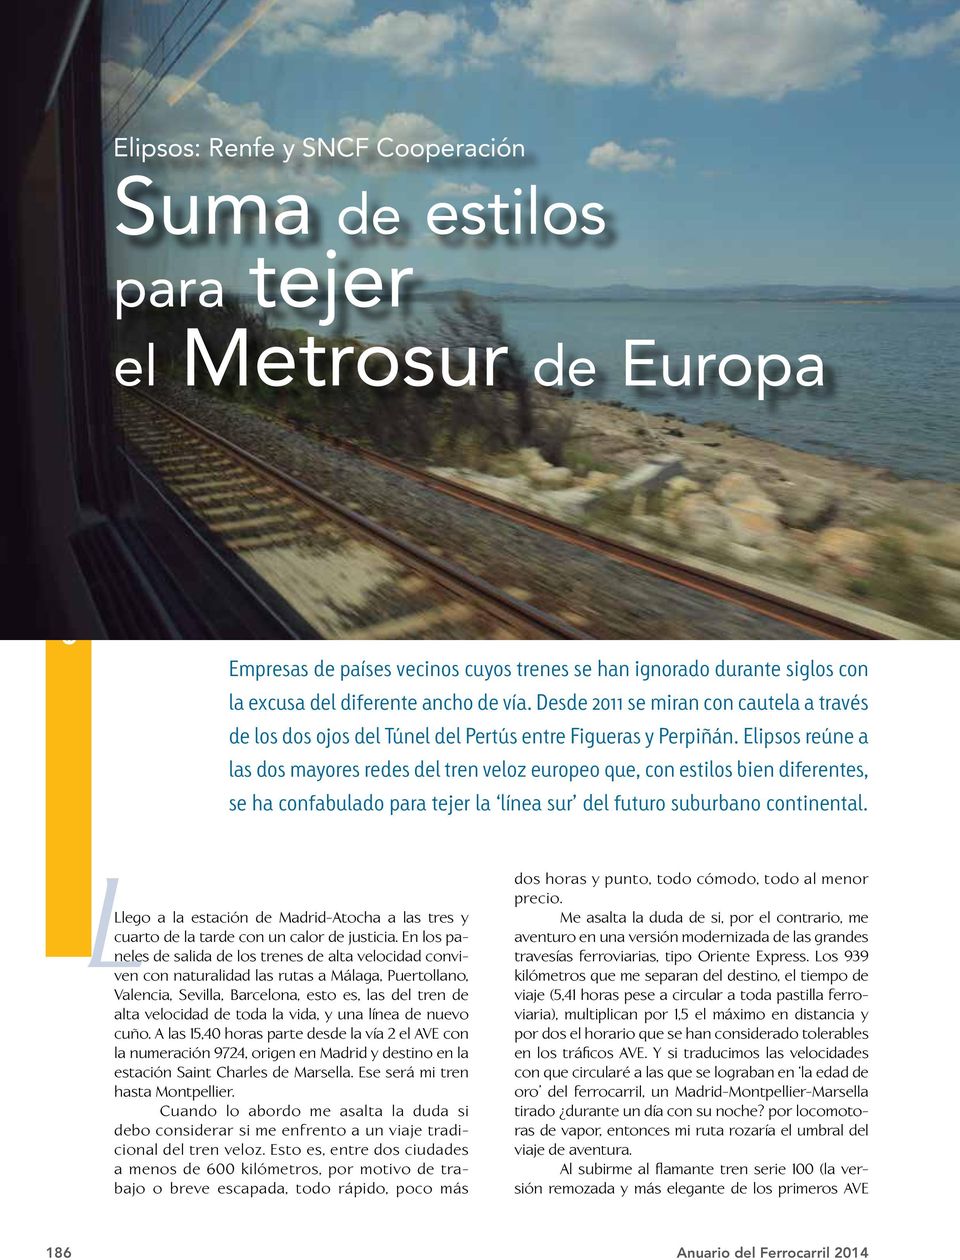 Elipsos reúne a las dos mayores redes del tren veloz europeo que, con estilos bien diferentes, se ha confabulado para tejer la línea sur del futuro suburbano continental.